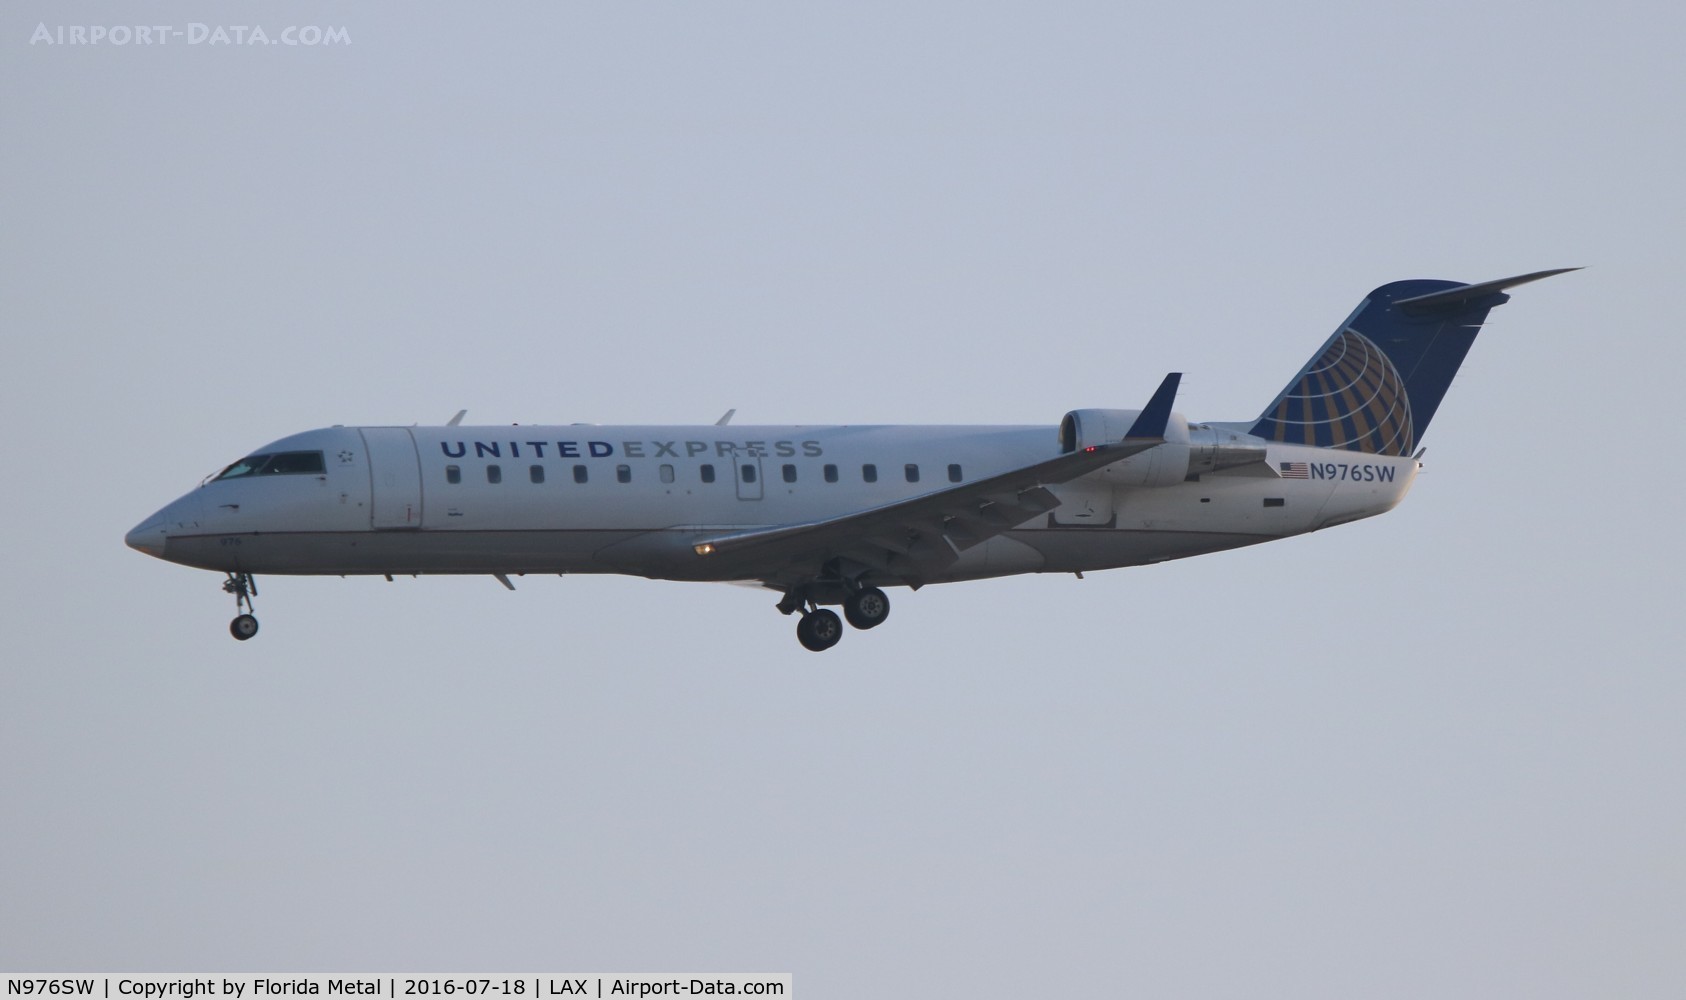 N976SW, 2004 Bombardier CRJ-100ER (CL-600-2B19) C/N 7952, United Express